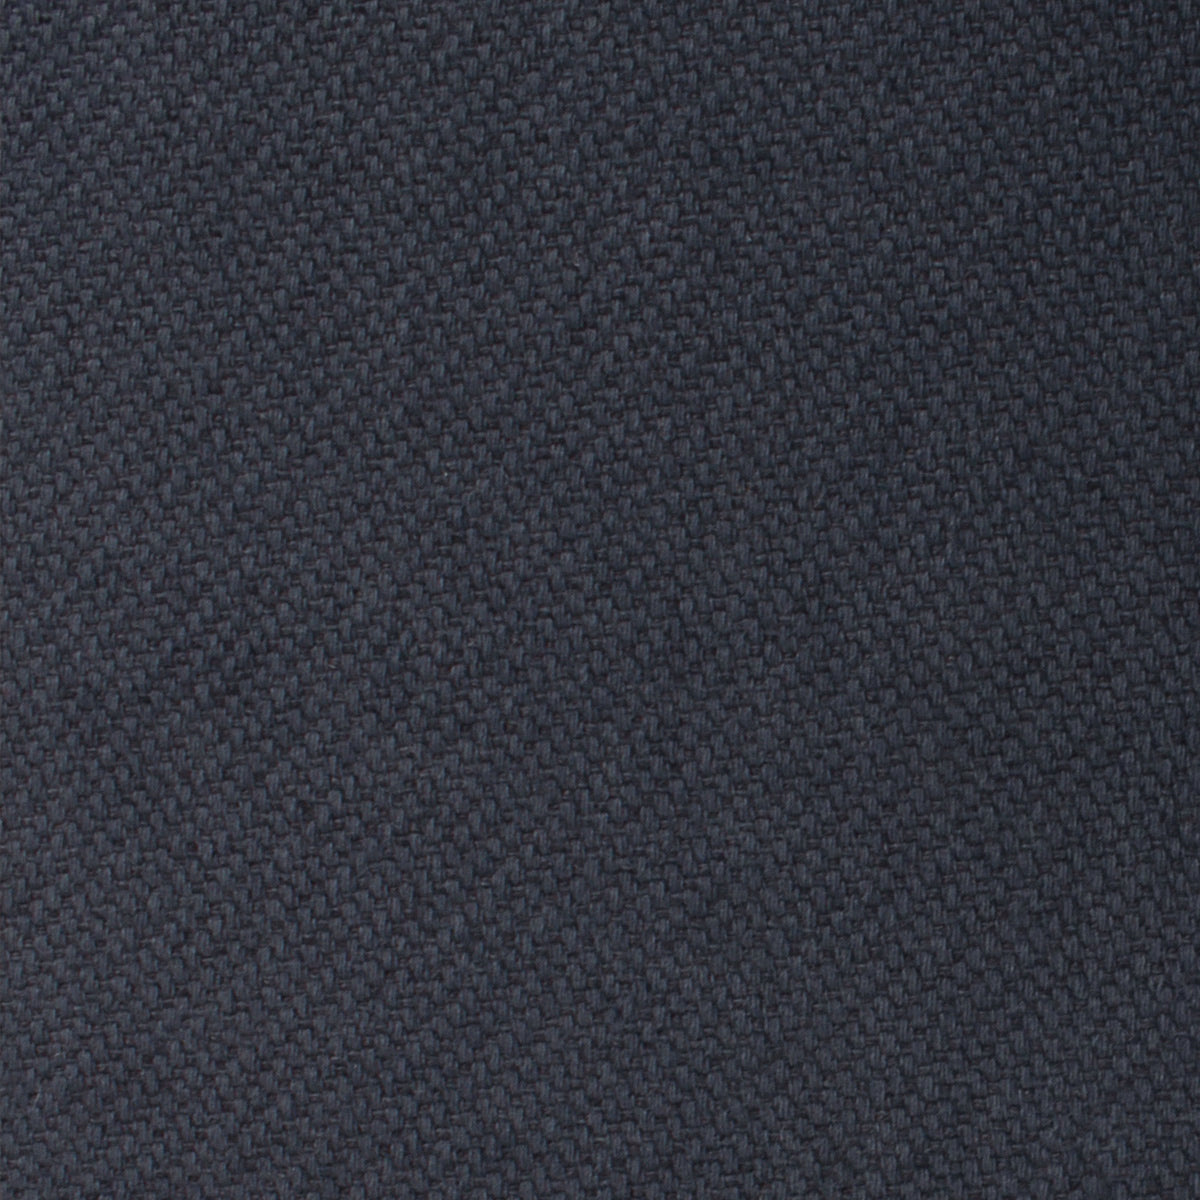 Öland Navy Blue Linen Pocket Square Fabric